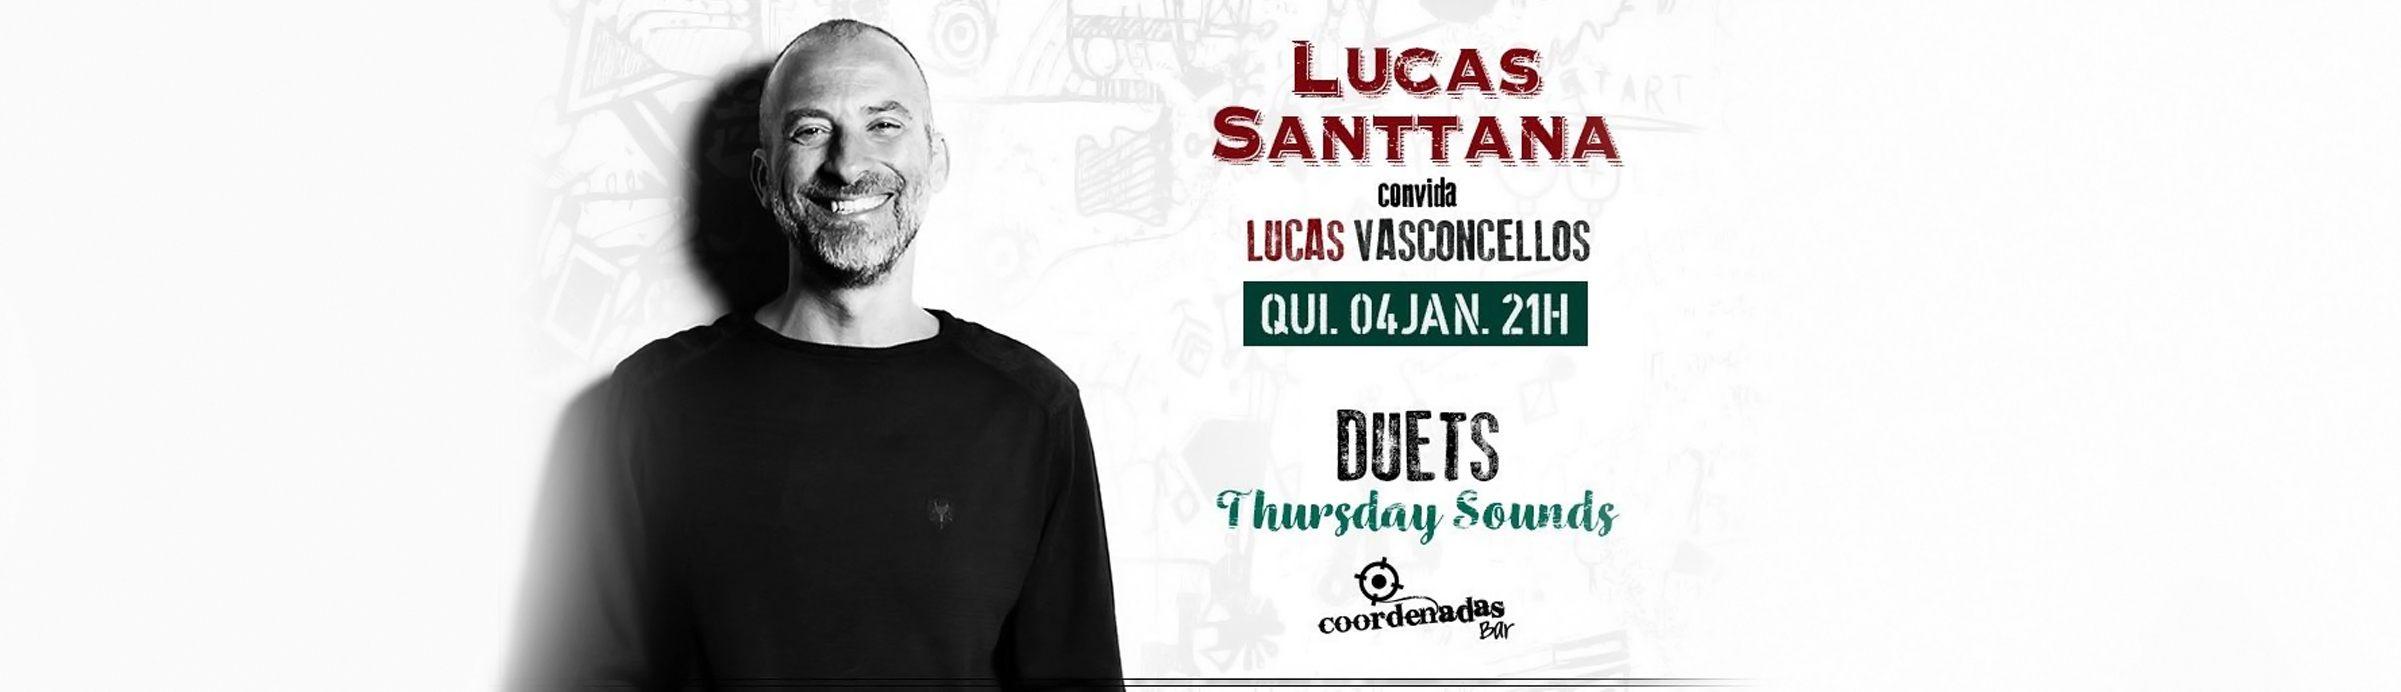 Os Lucas, Santtana e Vasconcellos, unem-se no Coordenadas Bar